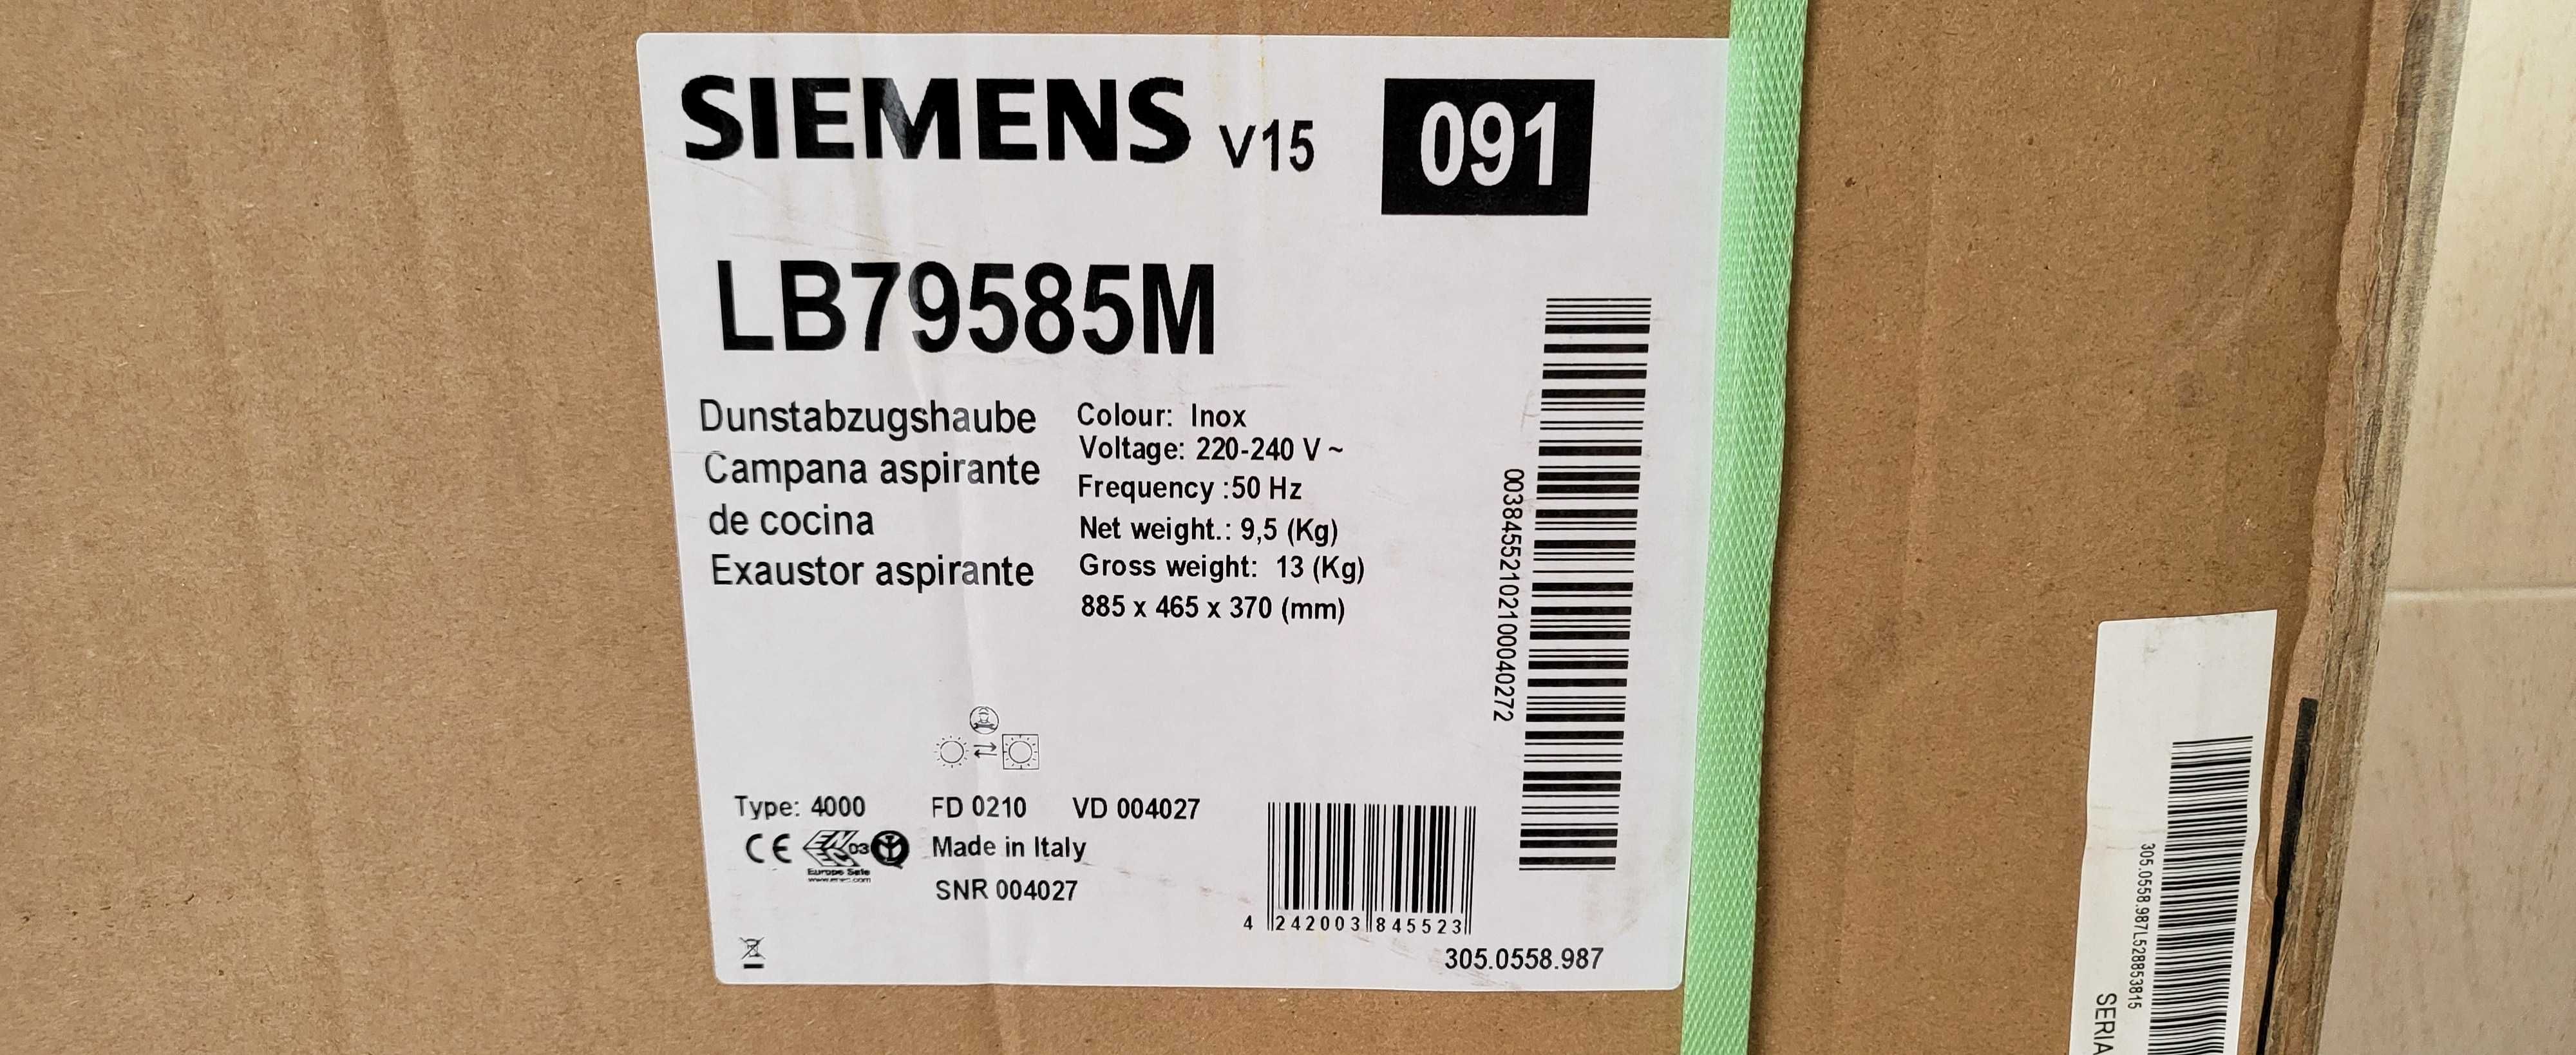 Exaustor Siemens LB89585M 86cm Classe A++, Novo